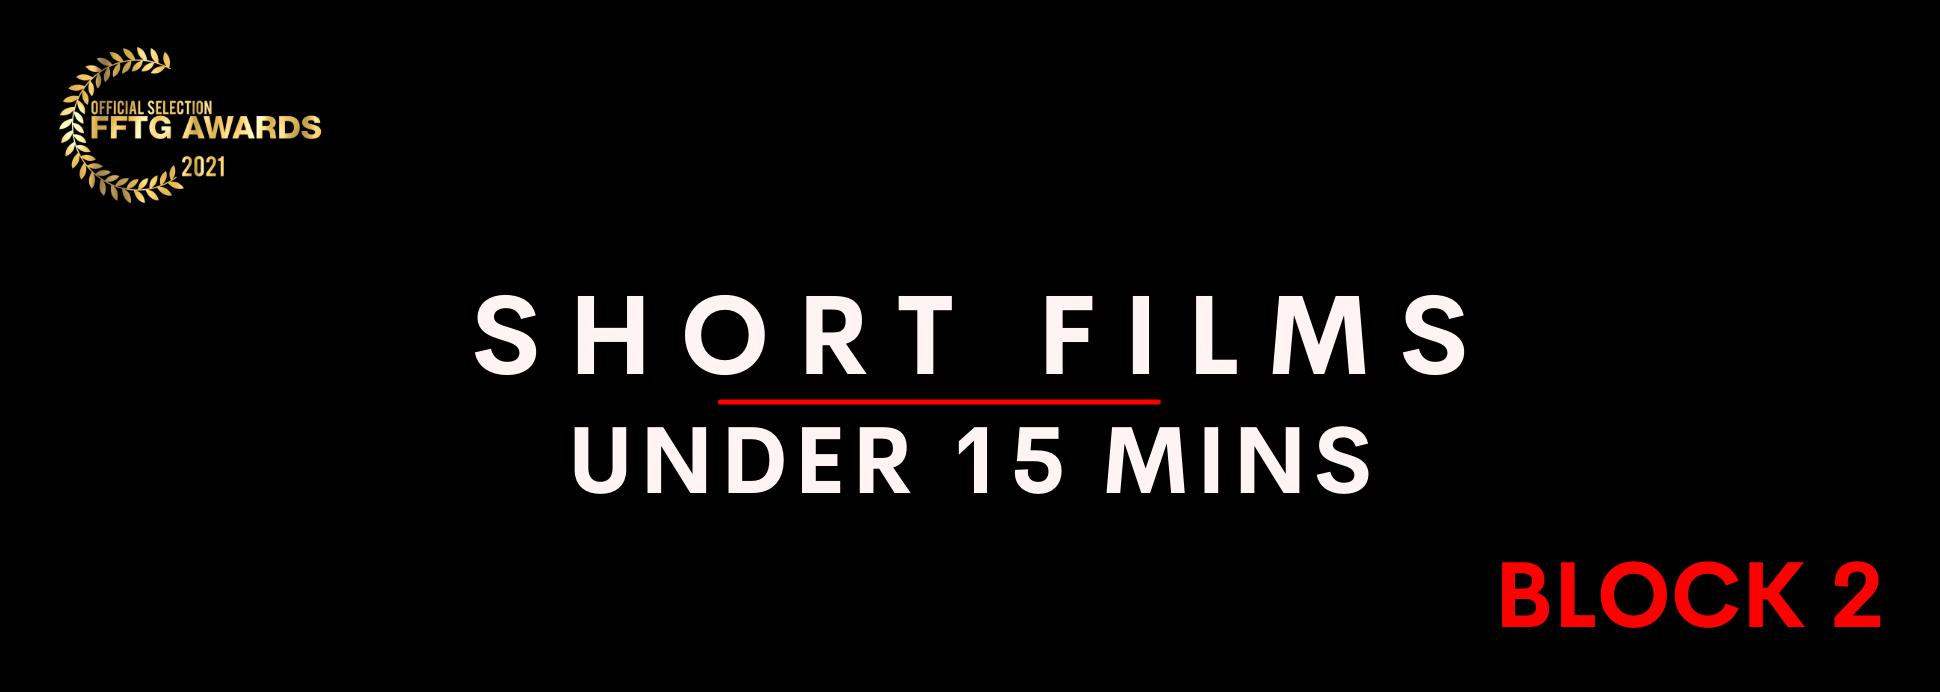 Short films under 15 mins BLOCK 2